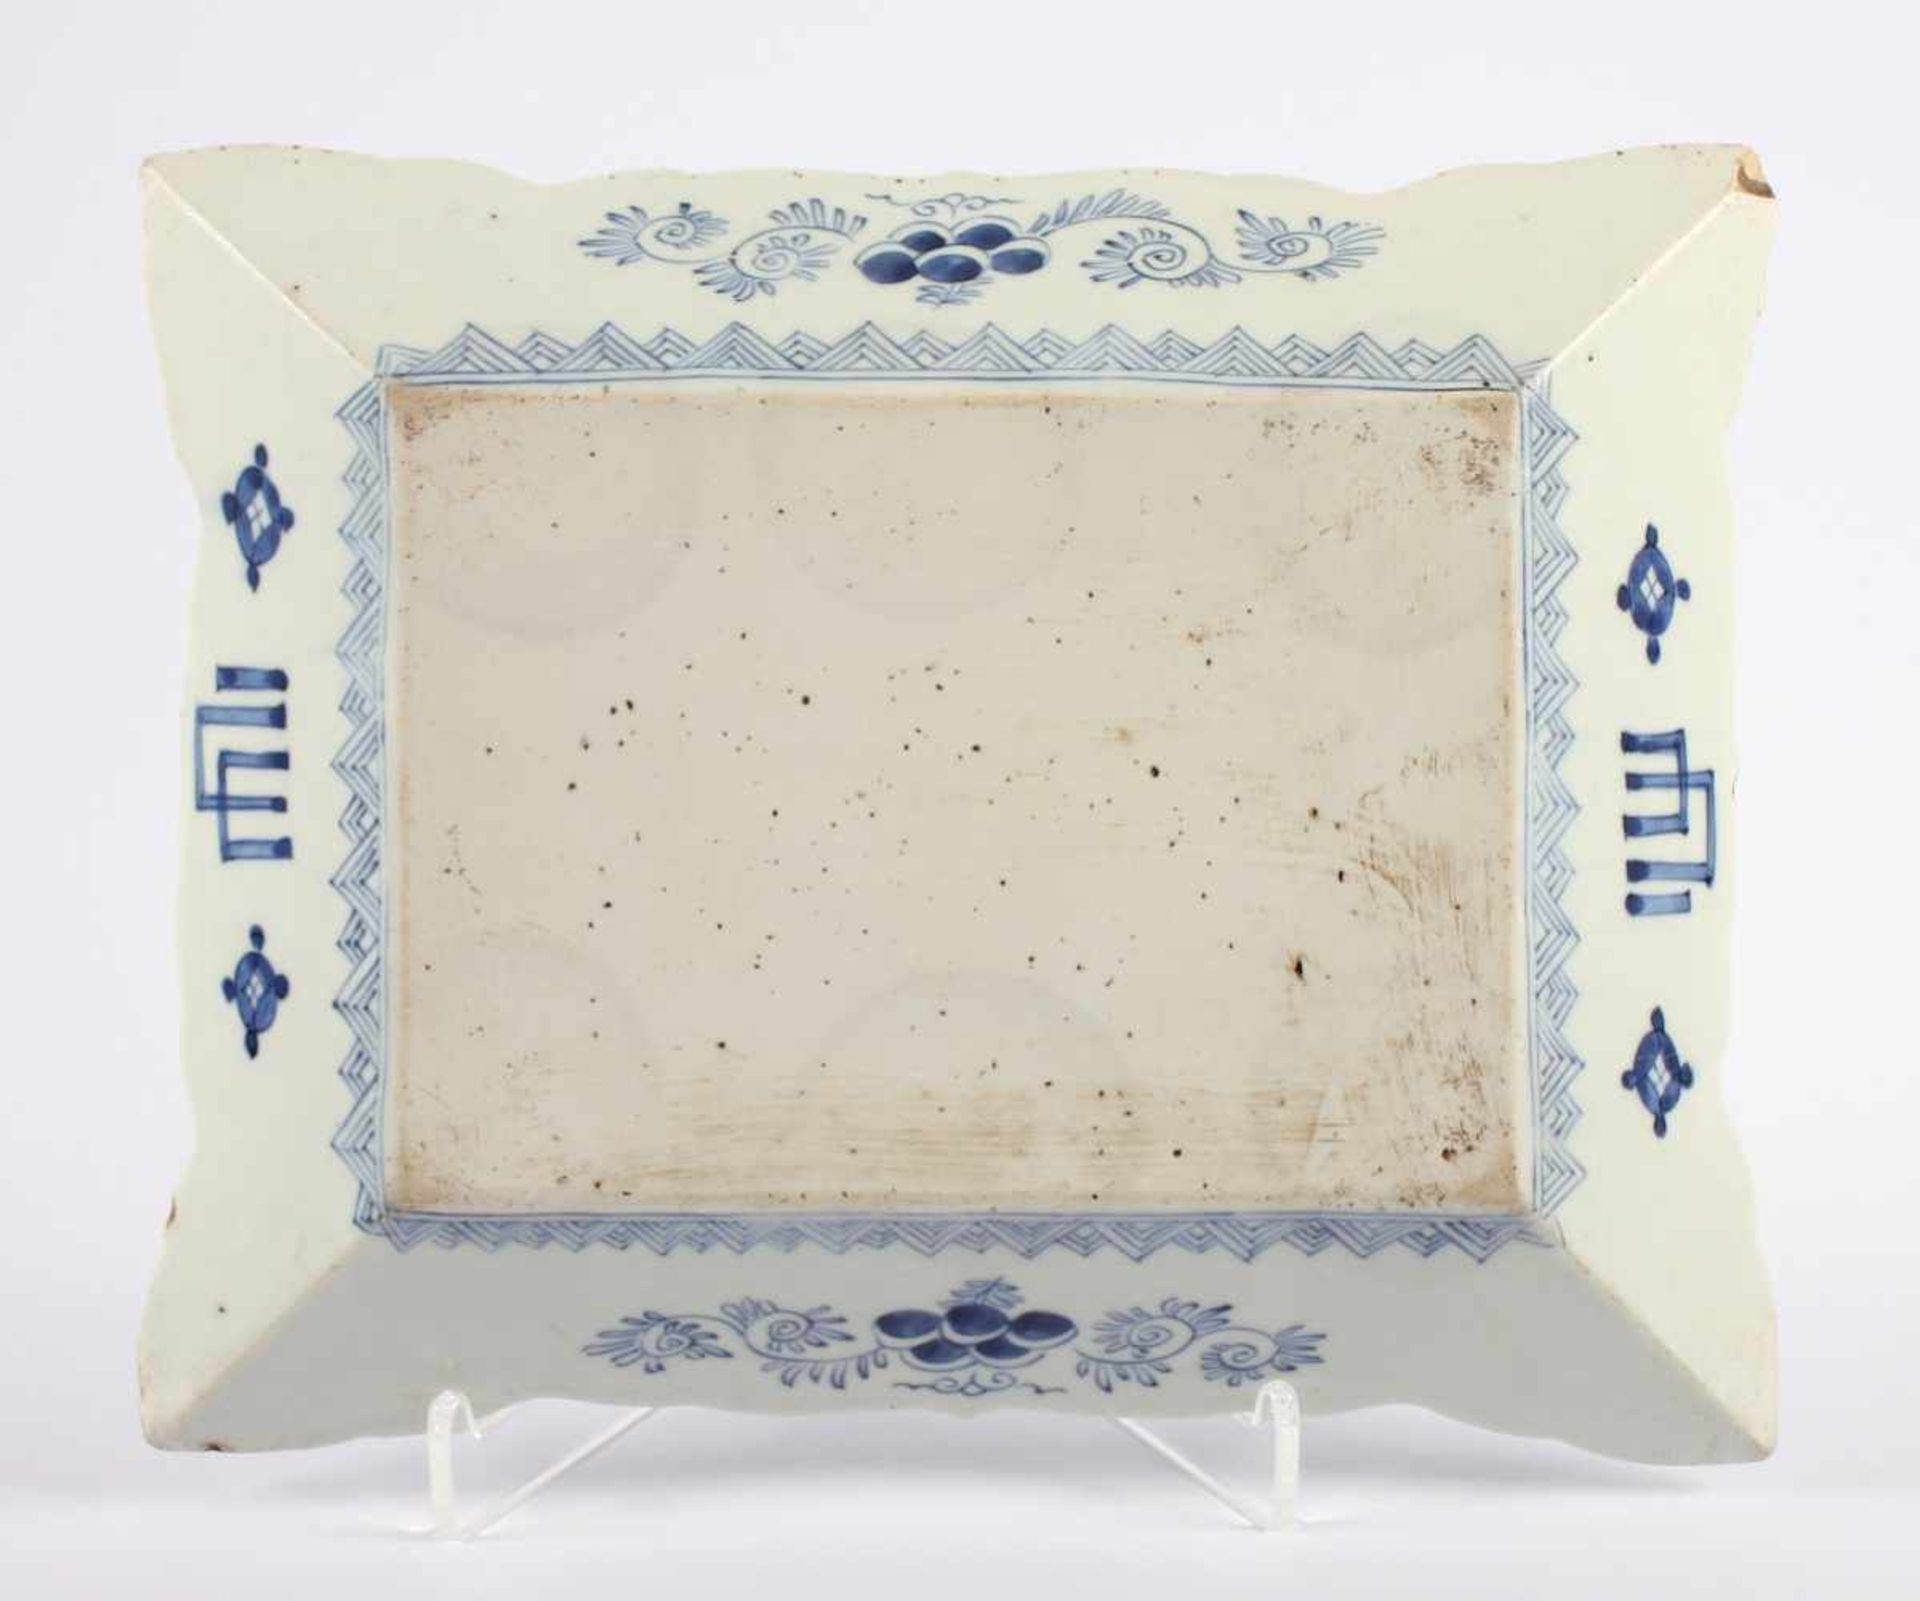 RECHTECKIGE PLATTE, Porzellan, Unterglasurblau dekoriert, L 31, best., ARITA, JAPAN, um 1800 - Bild 2 aus 2